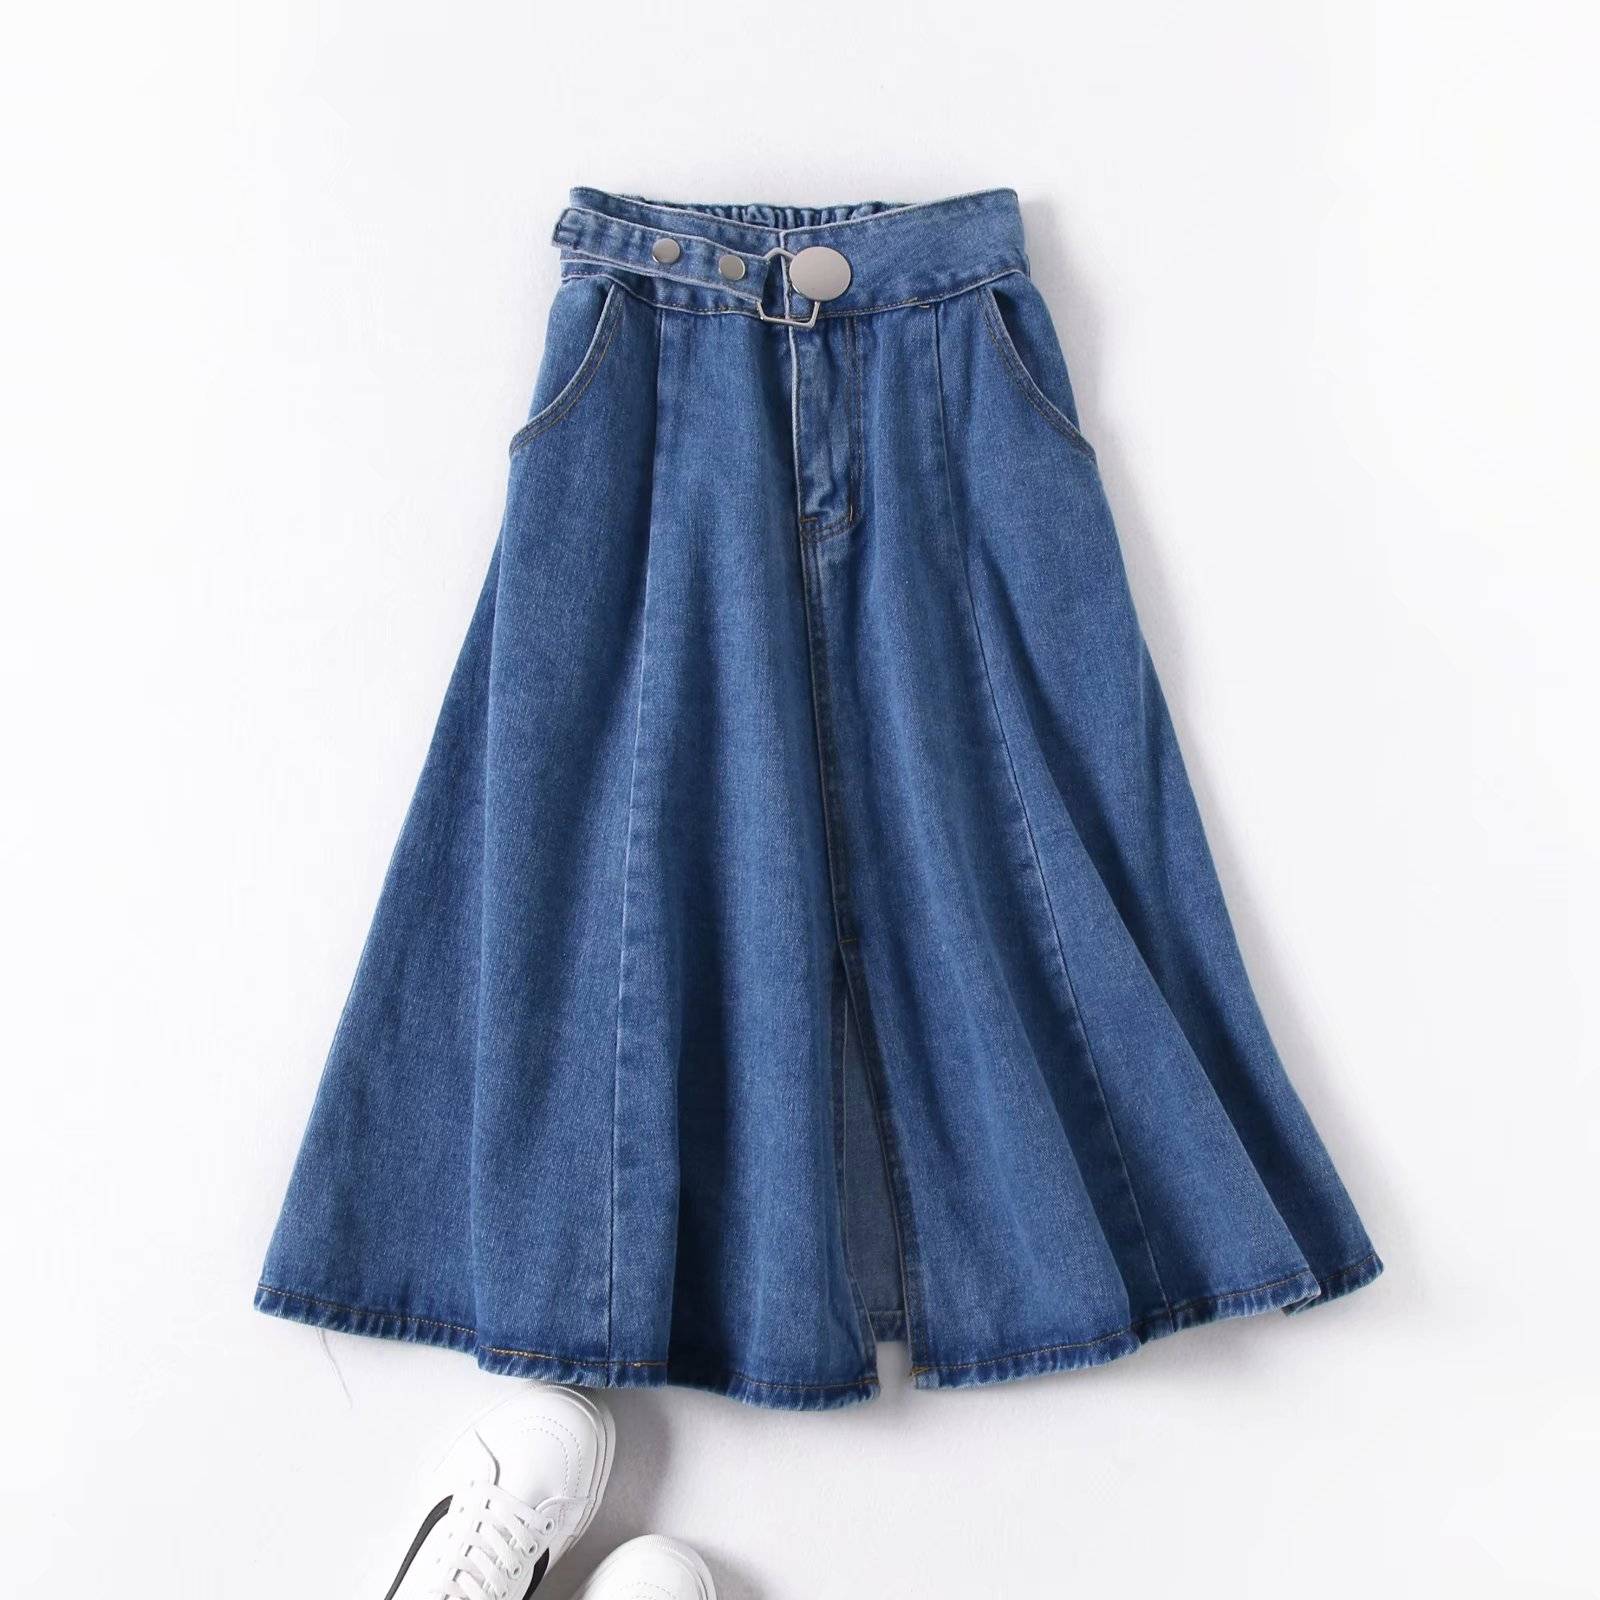 High waist a-line denim skirt